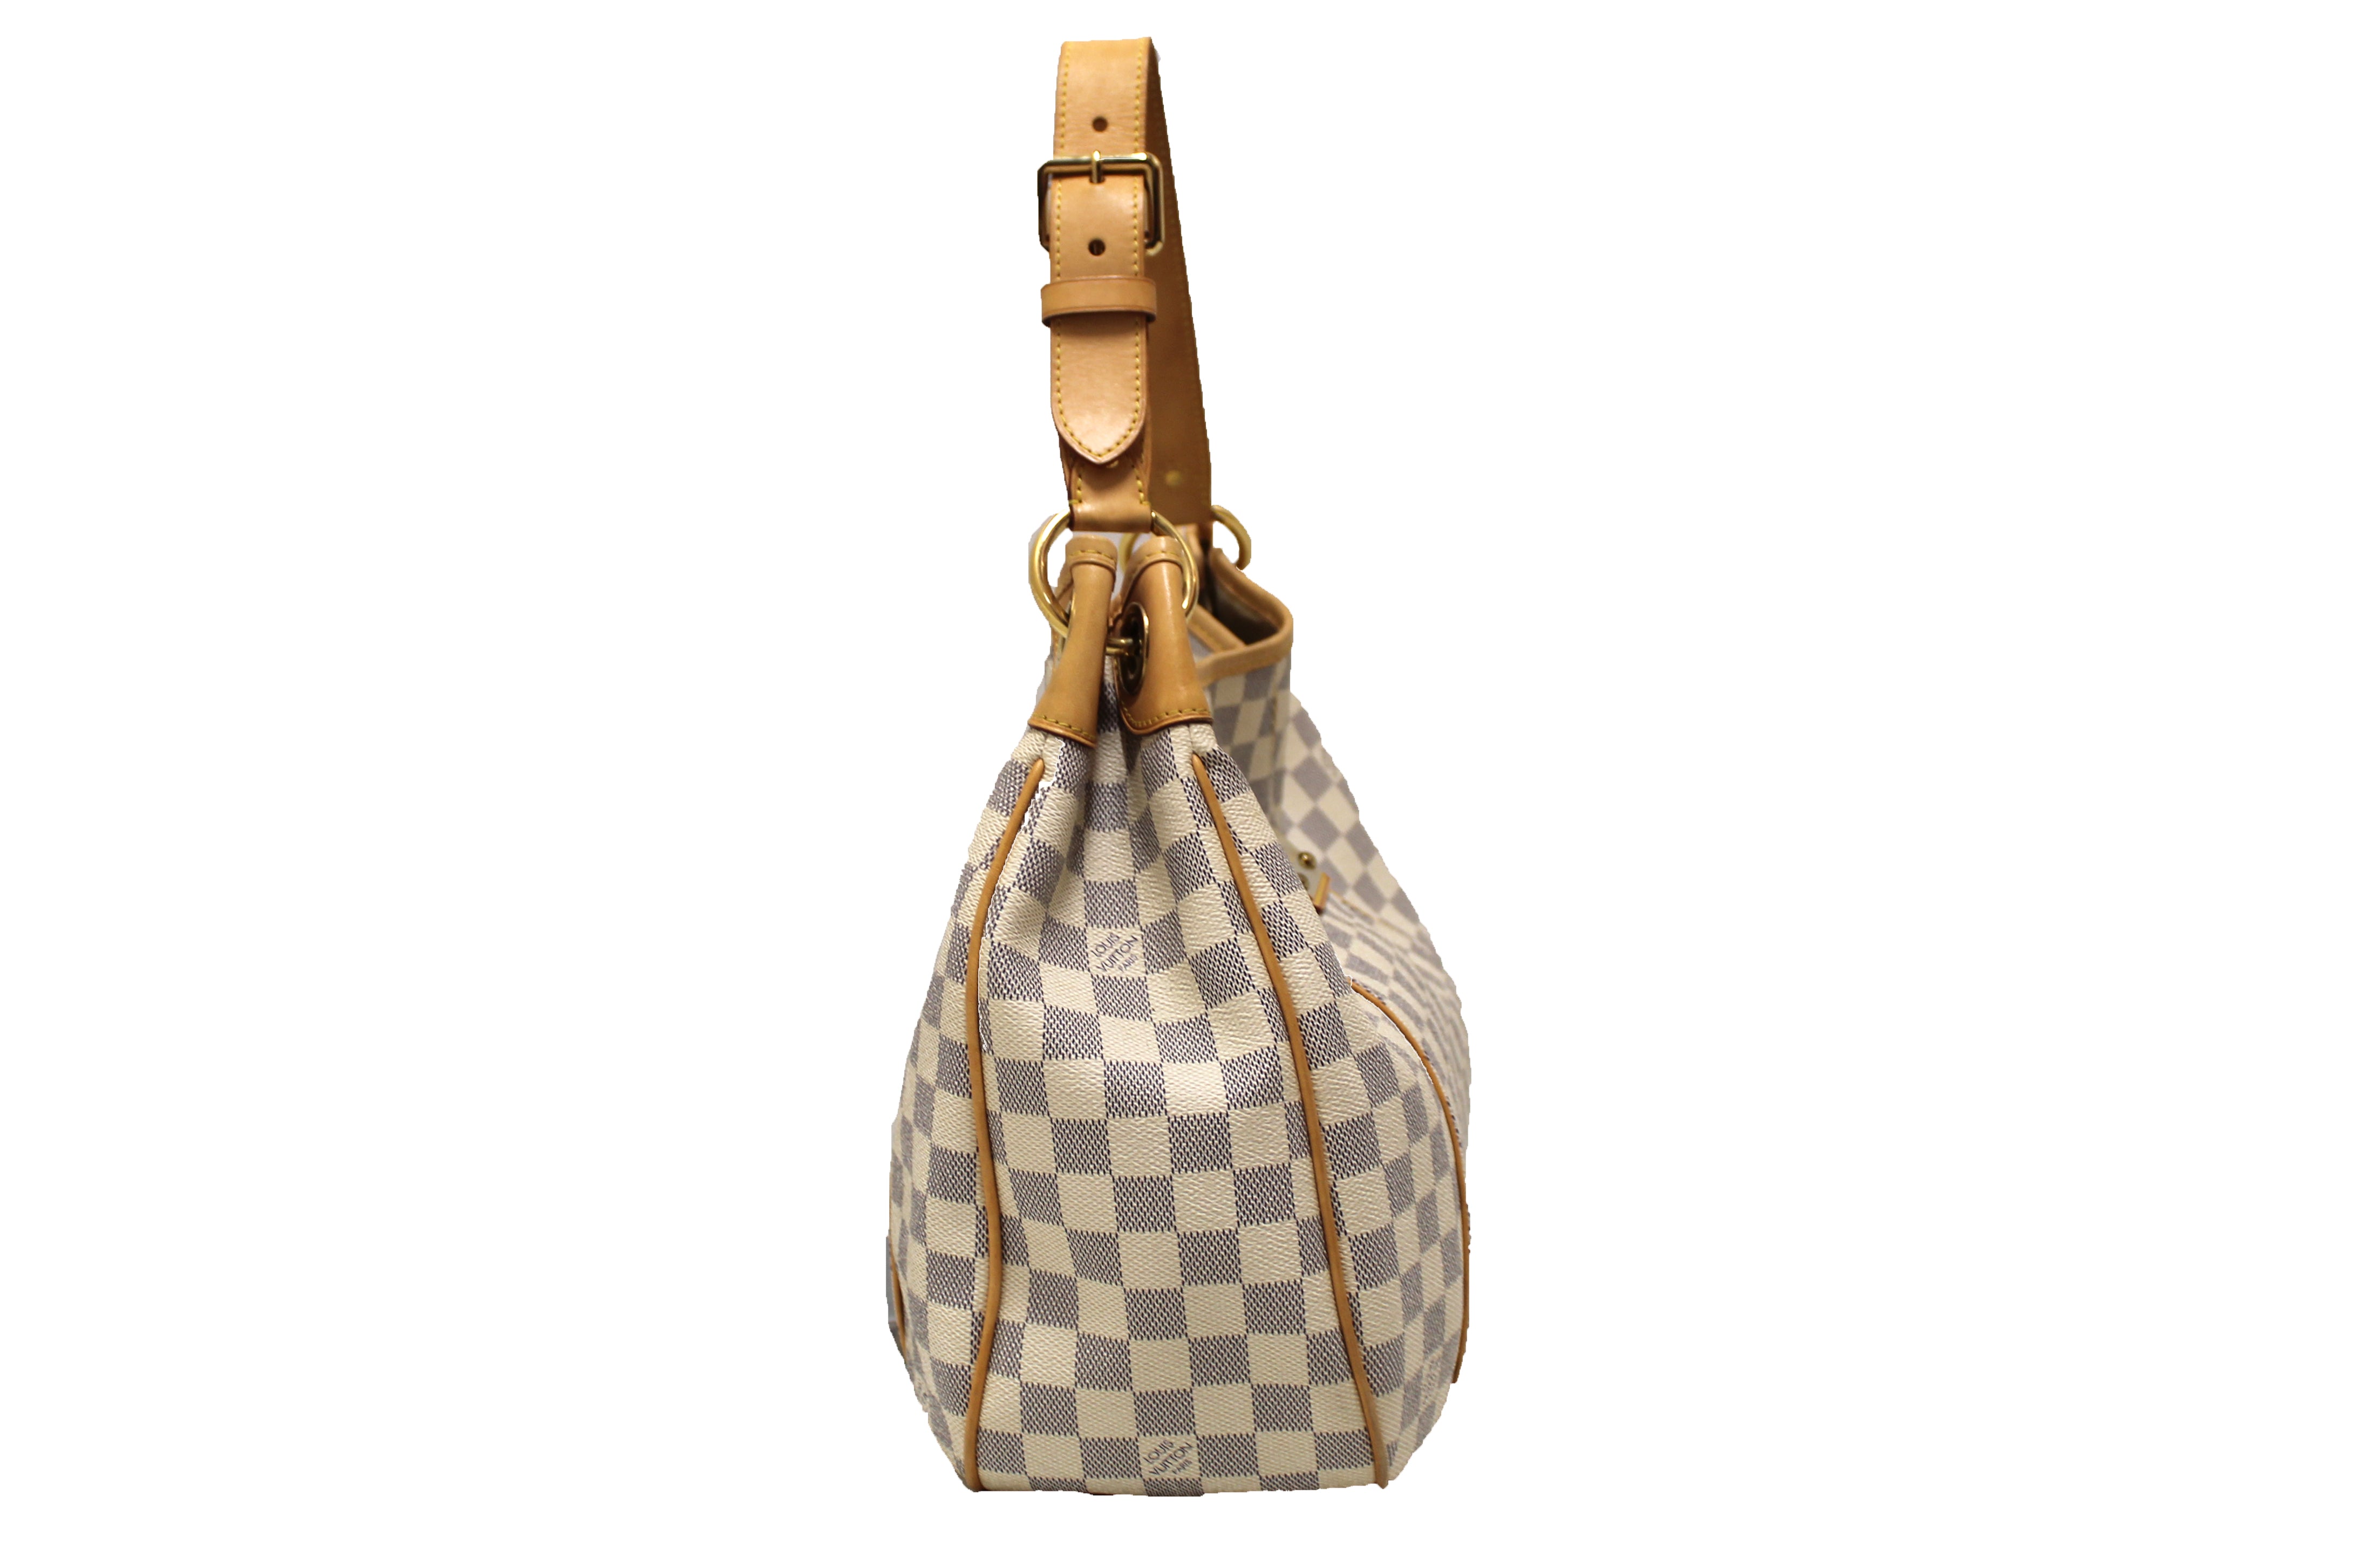 Authentic Louis Vuitton Damier Azur Galliera PM Shoulder Bag